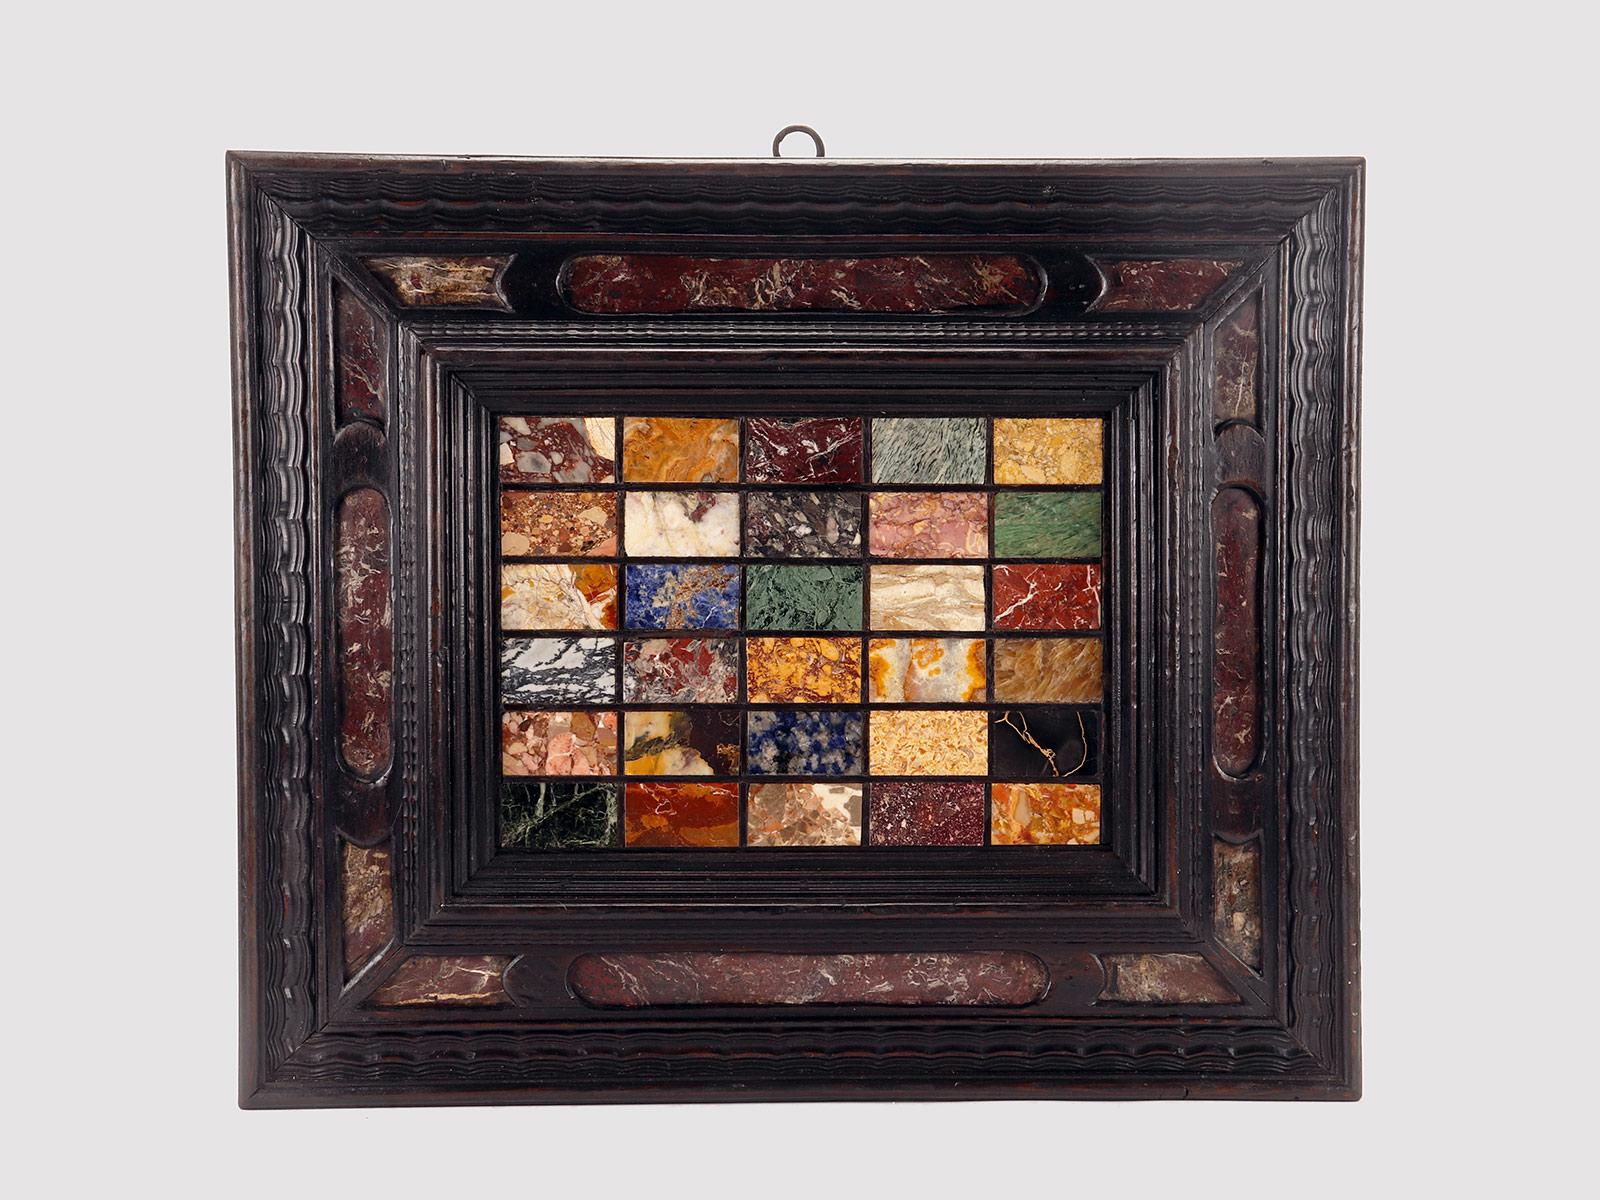 Eine Auswahl antiker Grand-Tour-Marmore, schwarz profiliert (Ebenholz), eingefügt in einen Rahmen aus ebonisiertem Nussbaumholz, mit Einlagen aus rotem Levanto-Marmor. Die Rückseite des Rahmens mit Teilen aus Lärchenholz. Die Mustertafel ist in eine